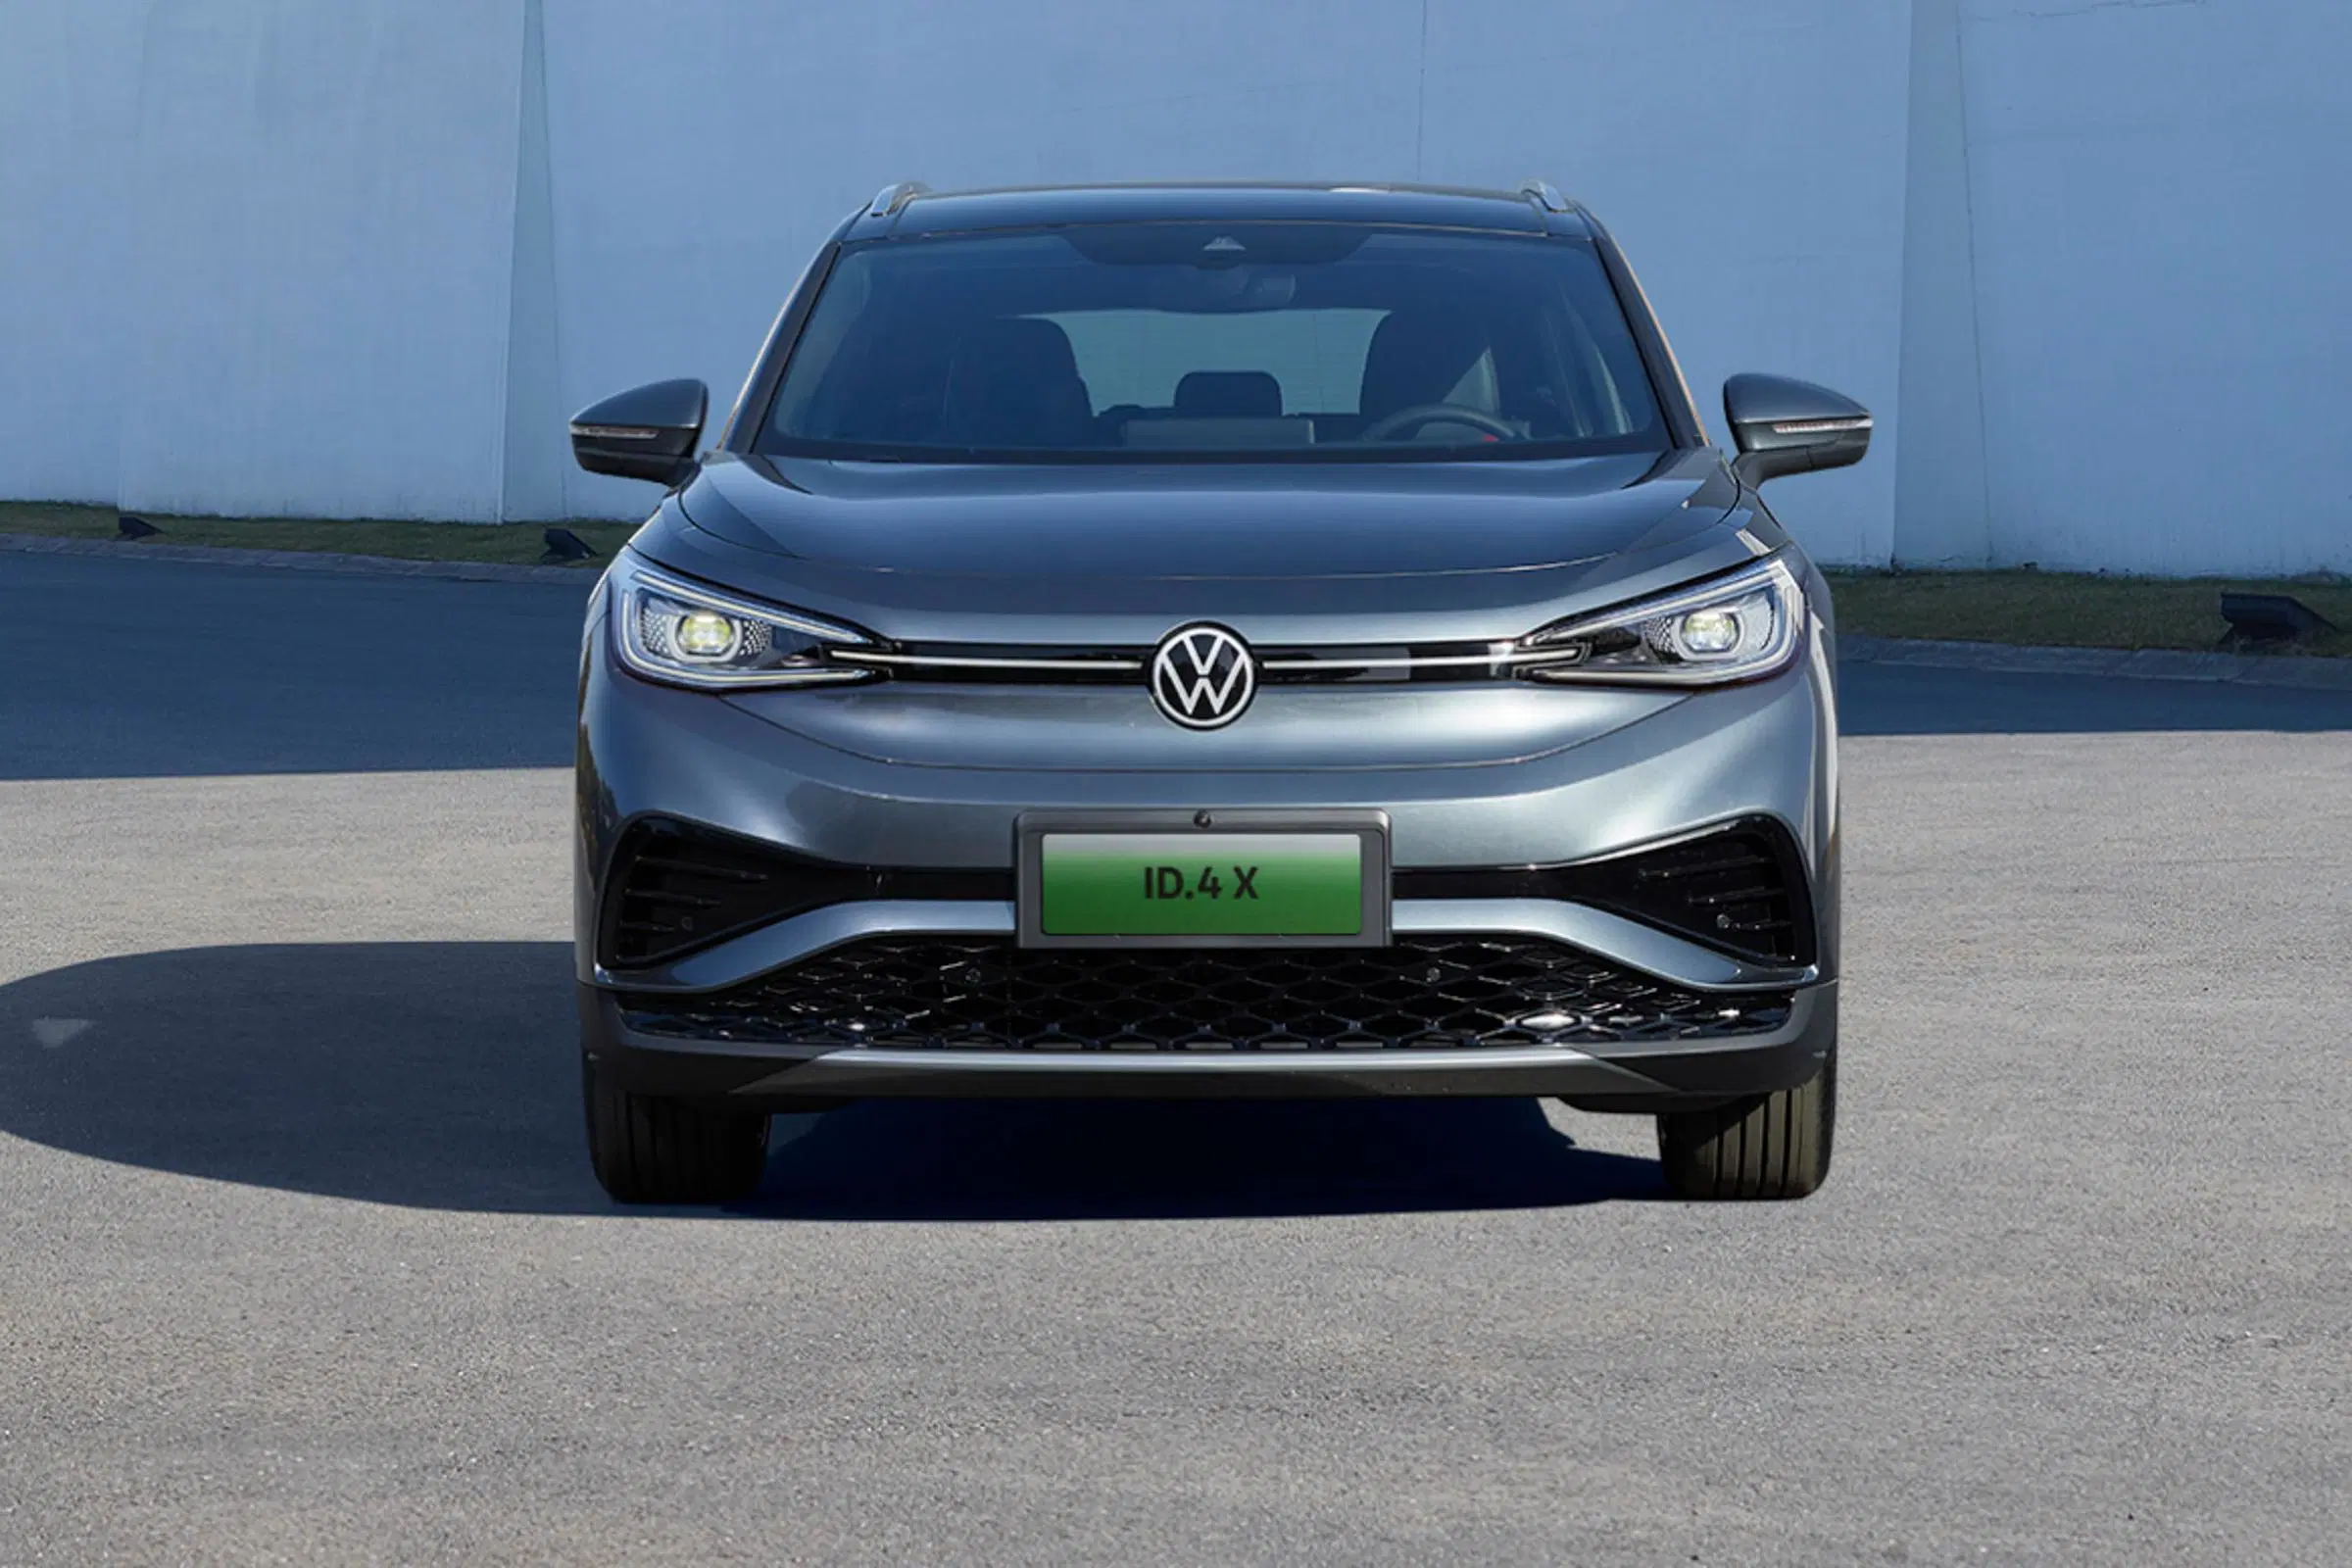 Volkswagen ID4 puro coche usado eléctrico de China